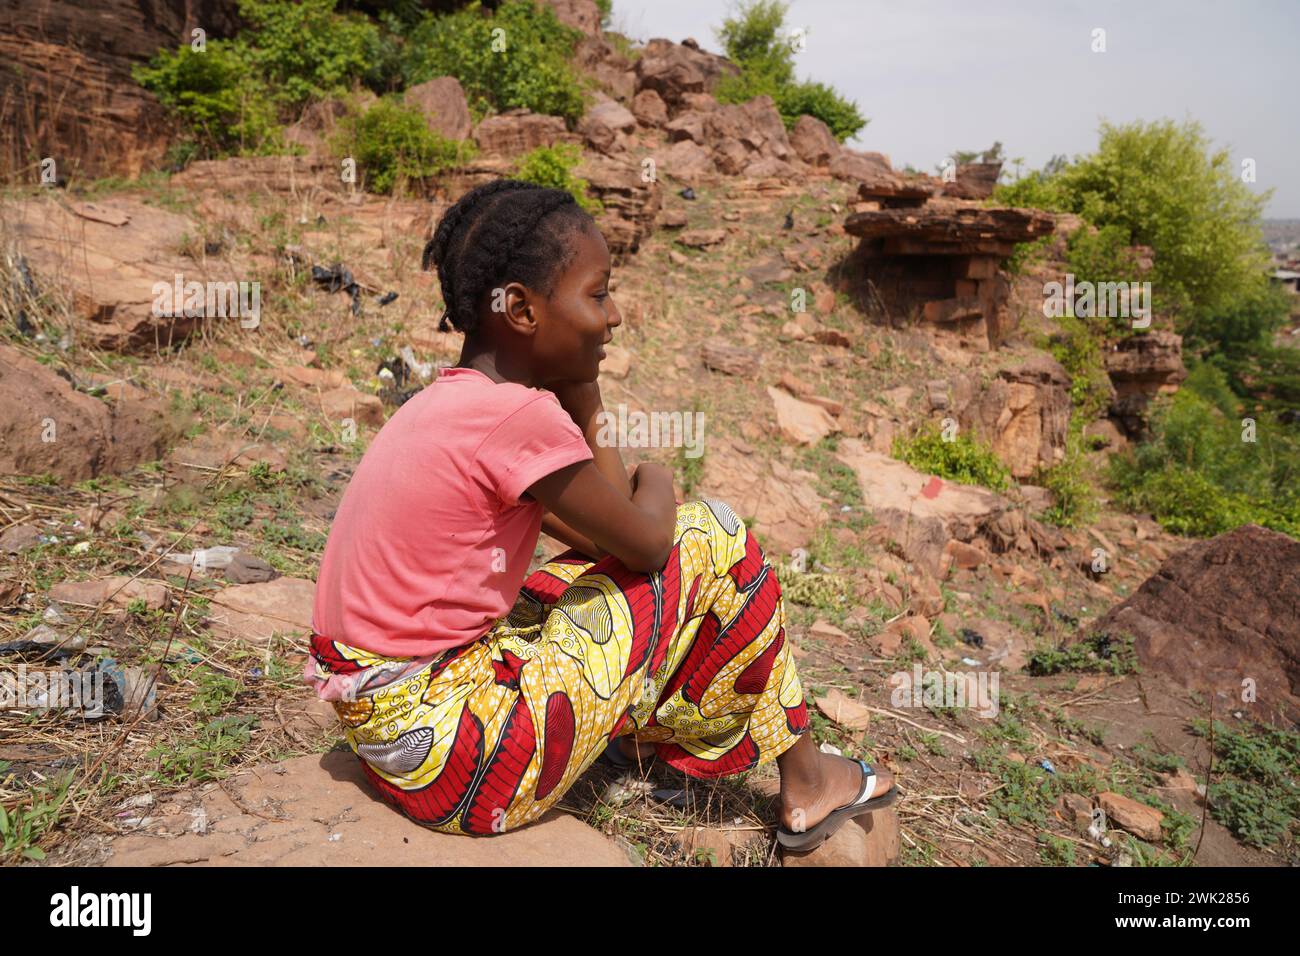 Vue latérale d'une jeune fille de village africaine sereine rêvant assis sur un rocher au milieu des mauvaises herbes et des broussailles par une journée ensoleillée symbolisant les différences dans le mode de vie Banque D'Images